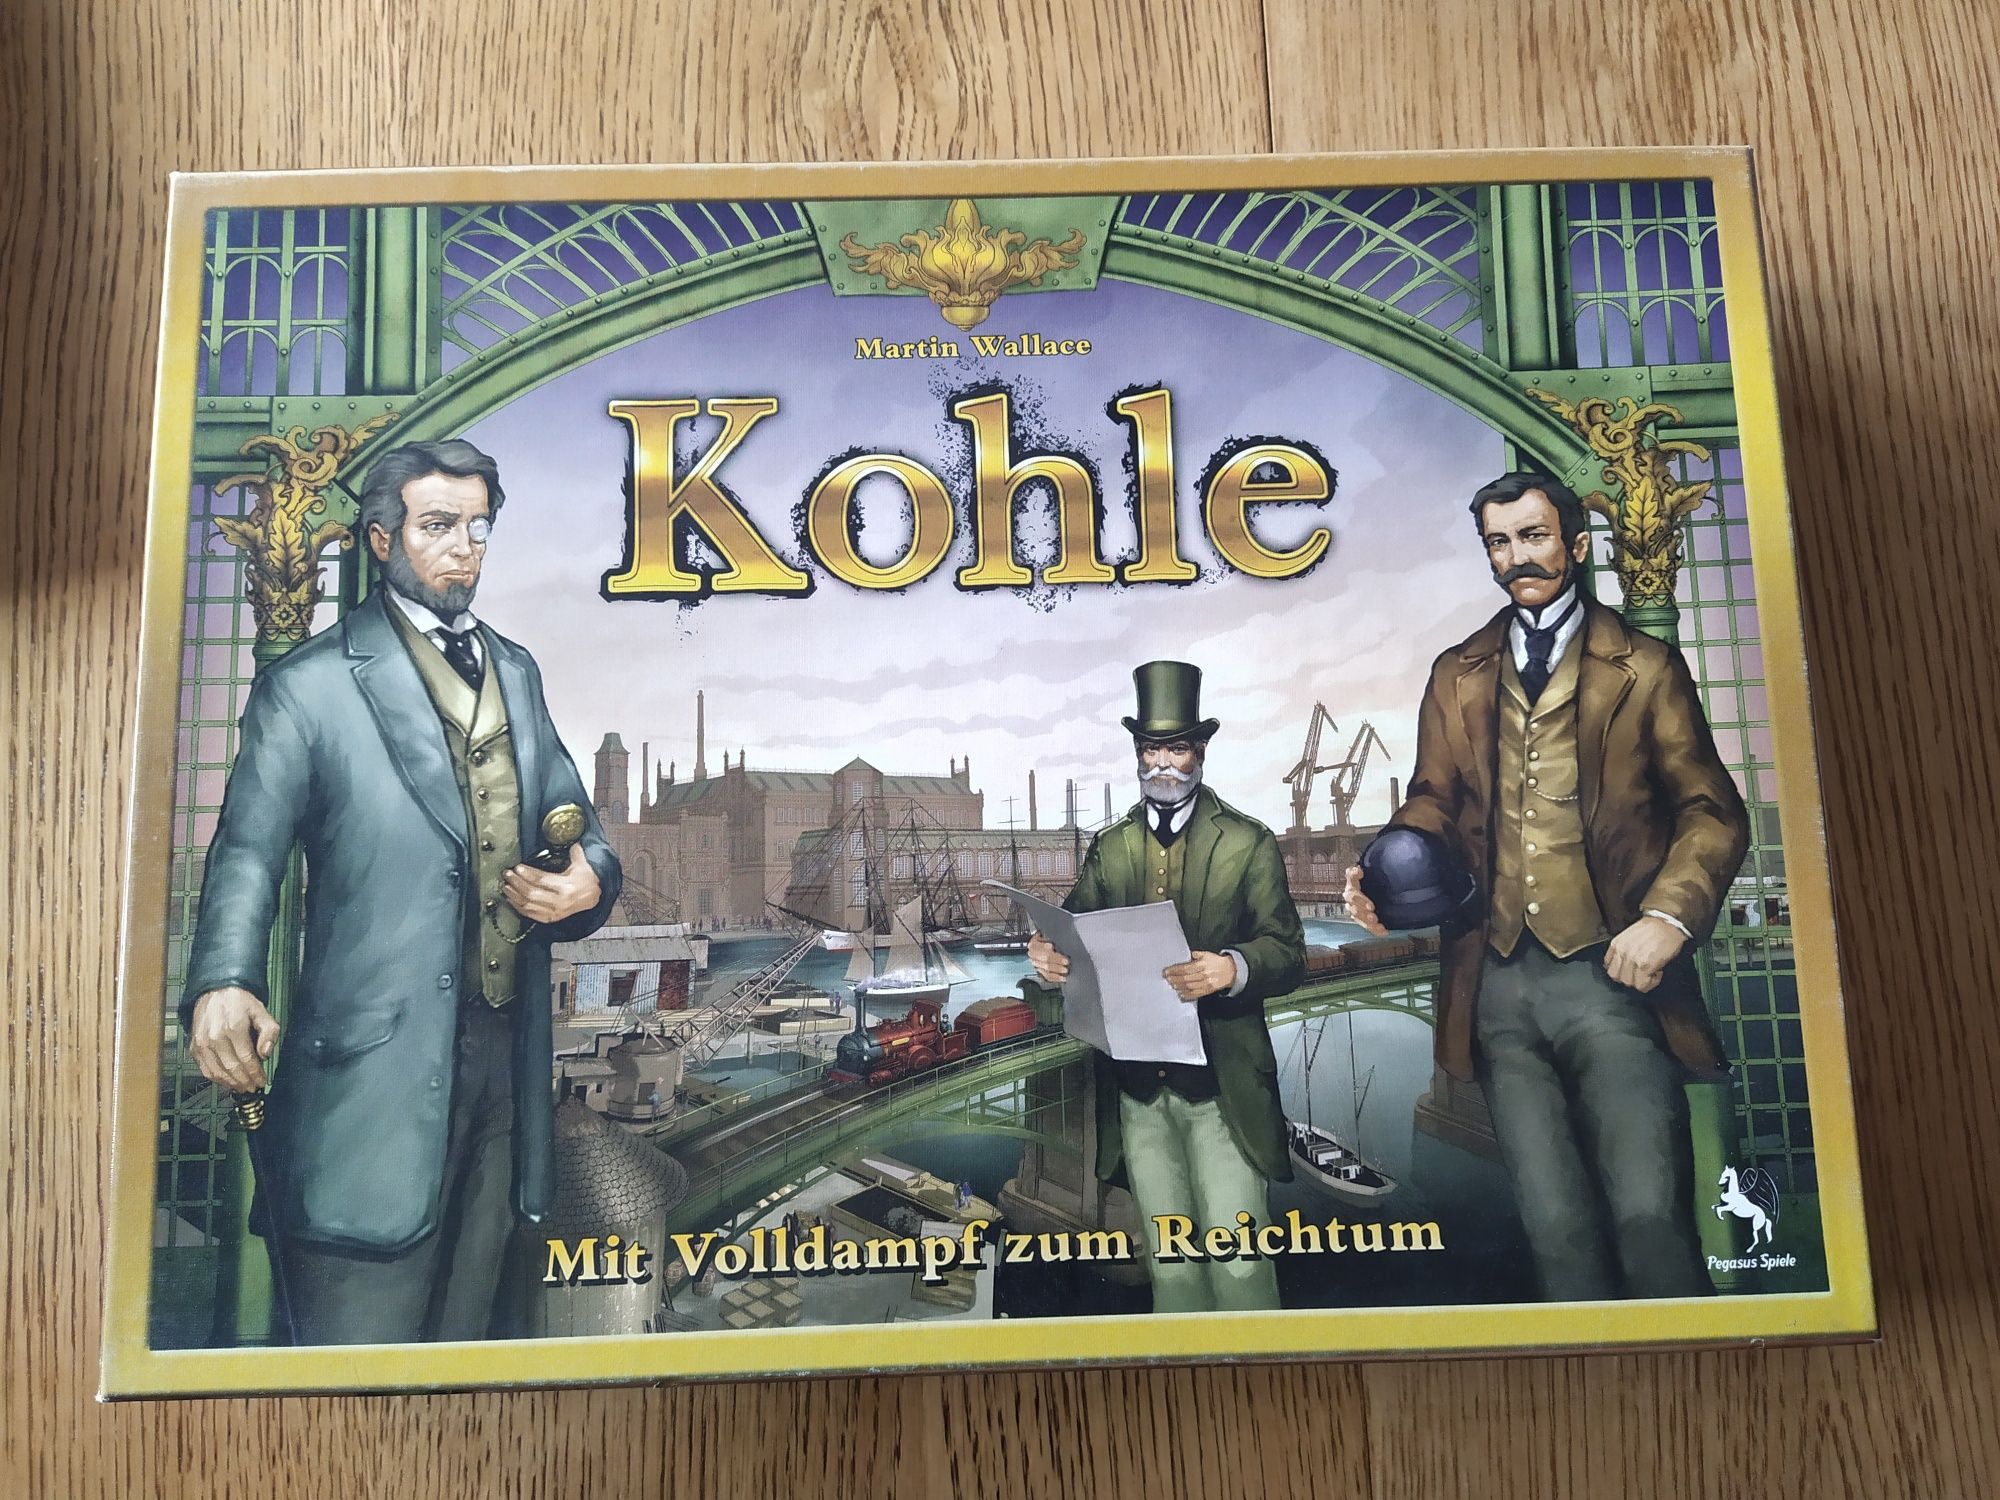 Kohle, stara niemiecka wersja gry Brass